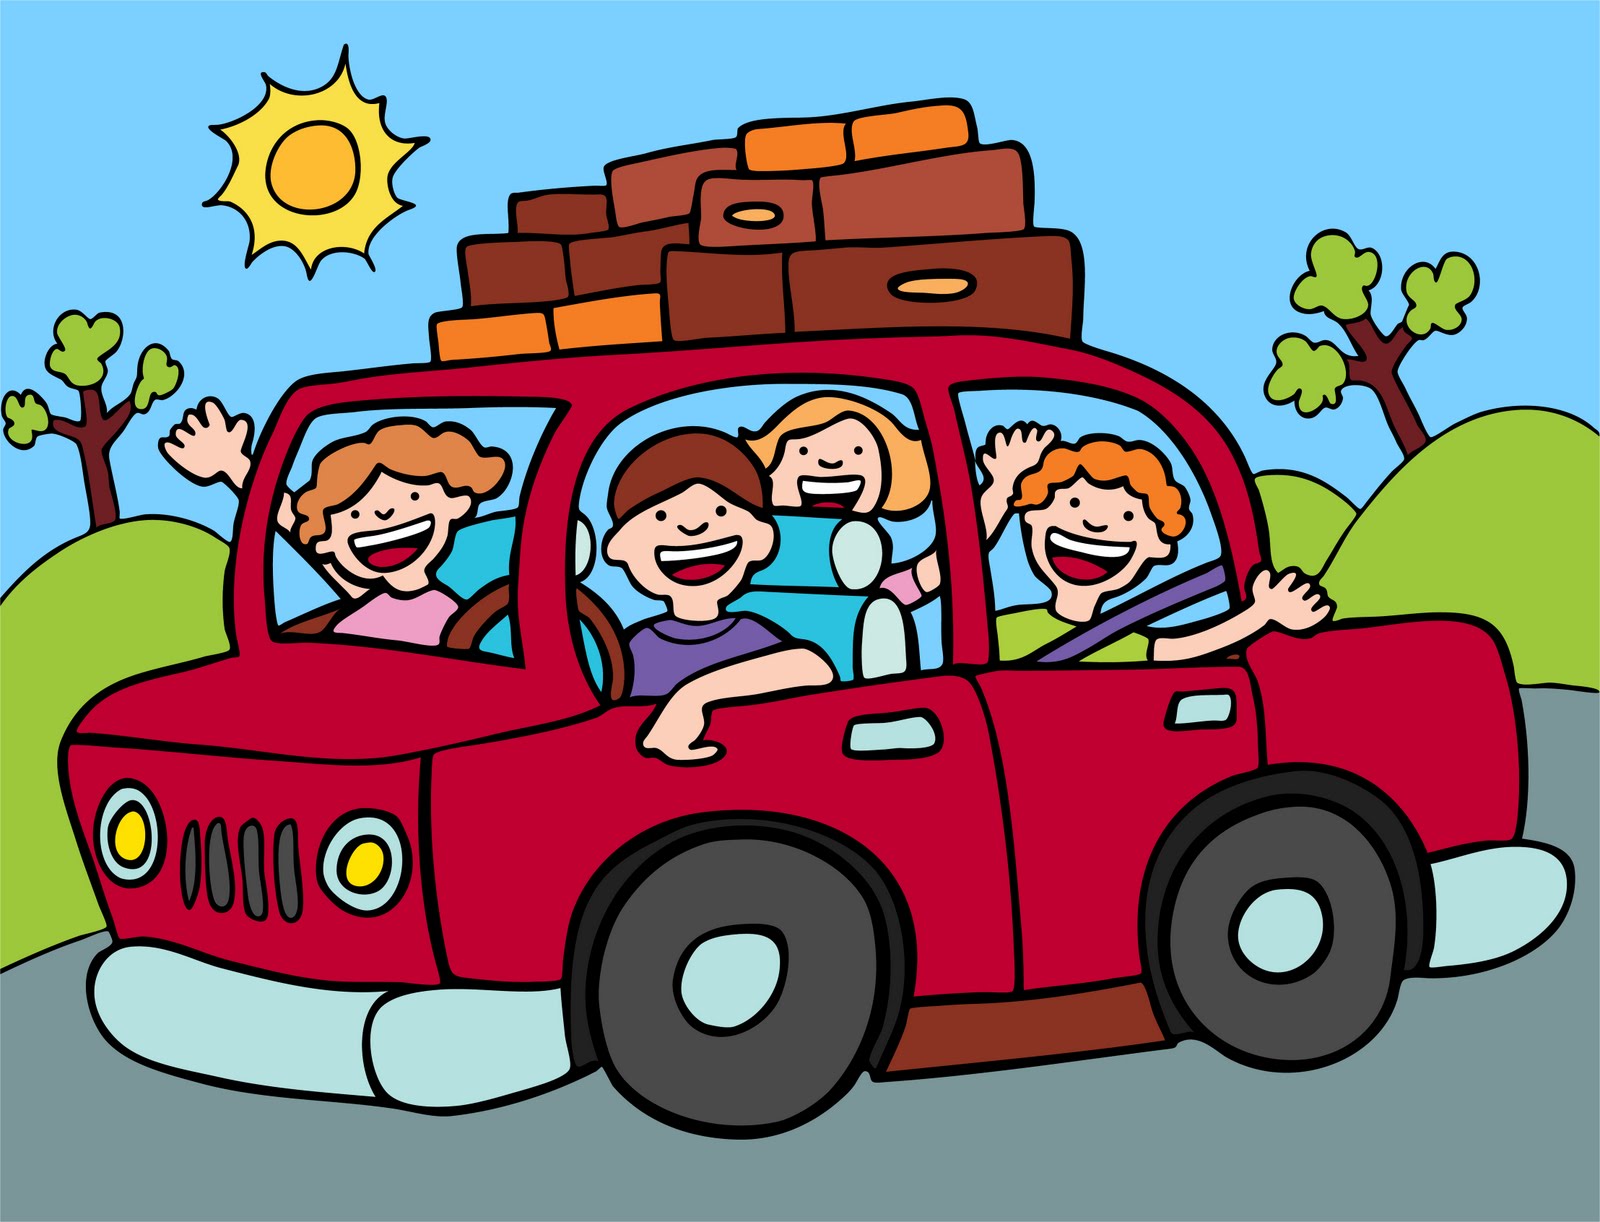 Едет навестить. Иллюстрация путешествие на машине с детьми. Иллюстрация семейный автомобиль. Веселое путешествие на машине. Путешествуем с детьми на автомобиле.